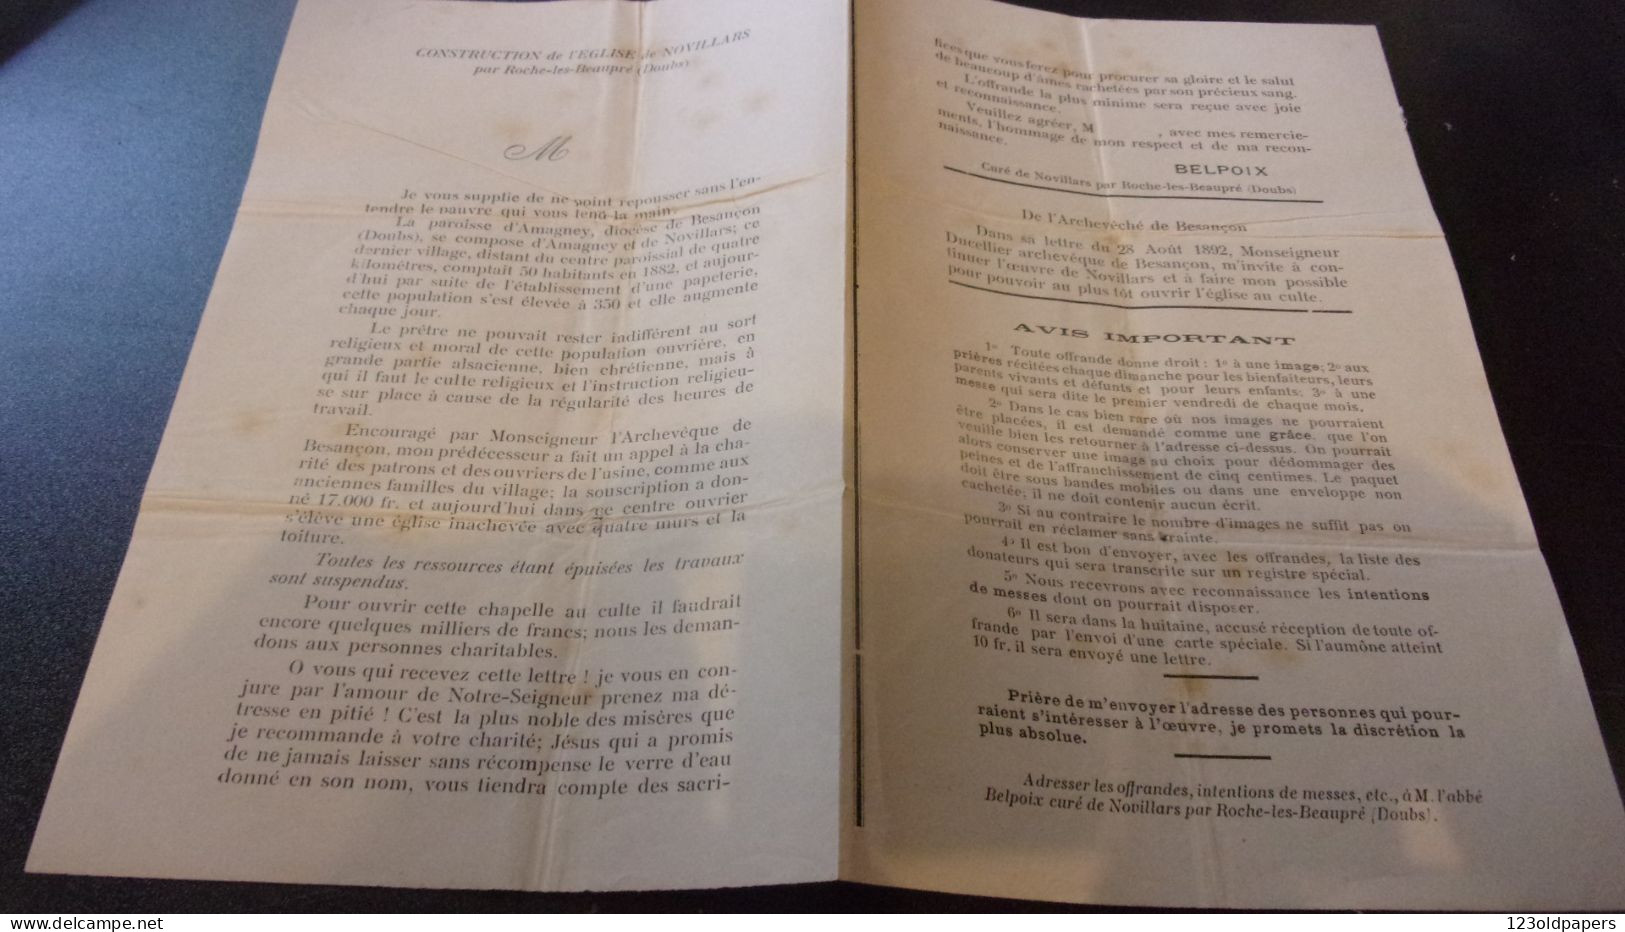 DOUBS 1892 CURE BELPOIX APPEL POUR CONSTRUCTION EGLISE DE NOVILLARS PAR ROCHE LES BEAUPRE AMAGNEY - Historical Documents